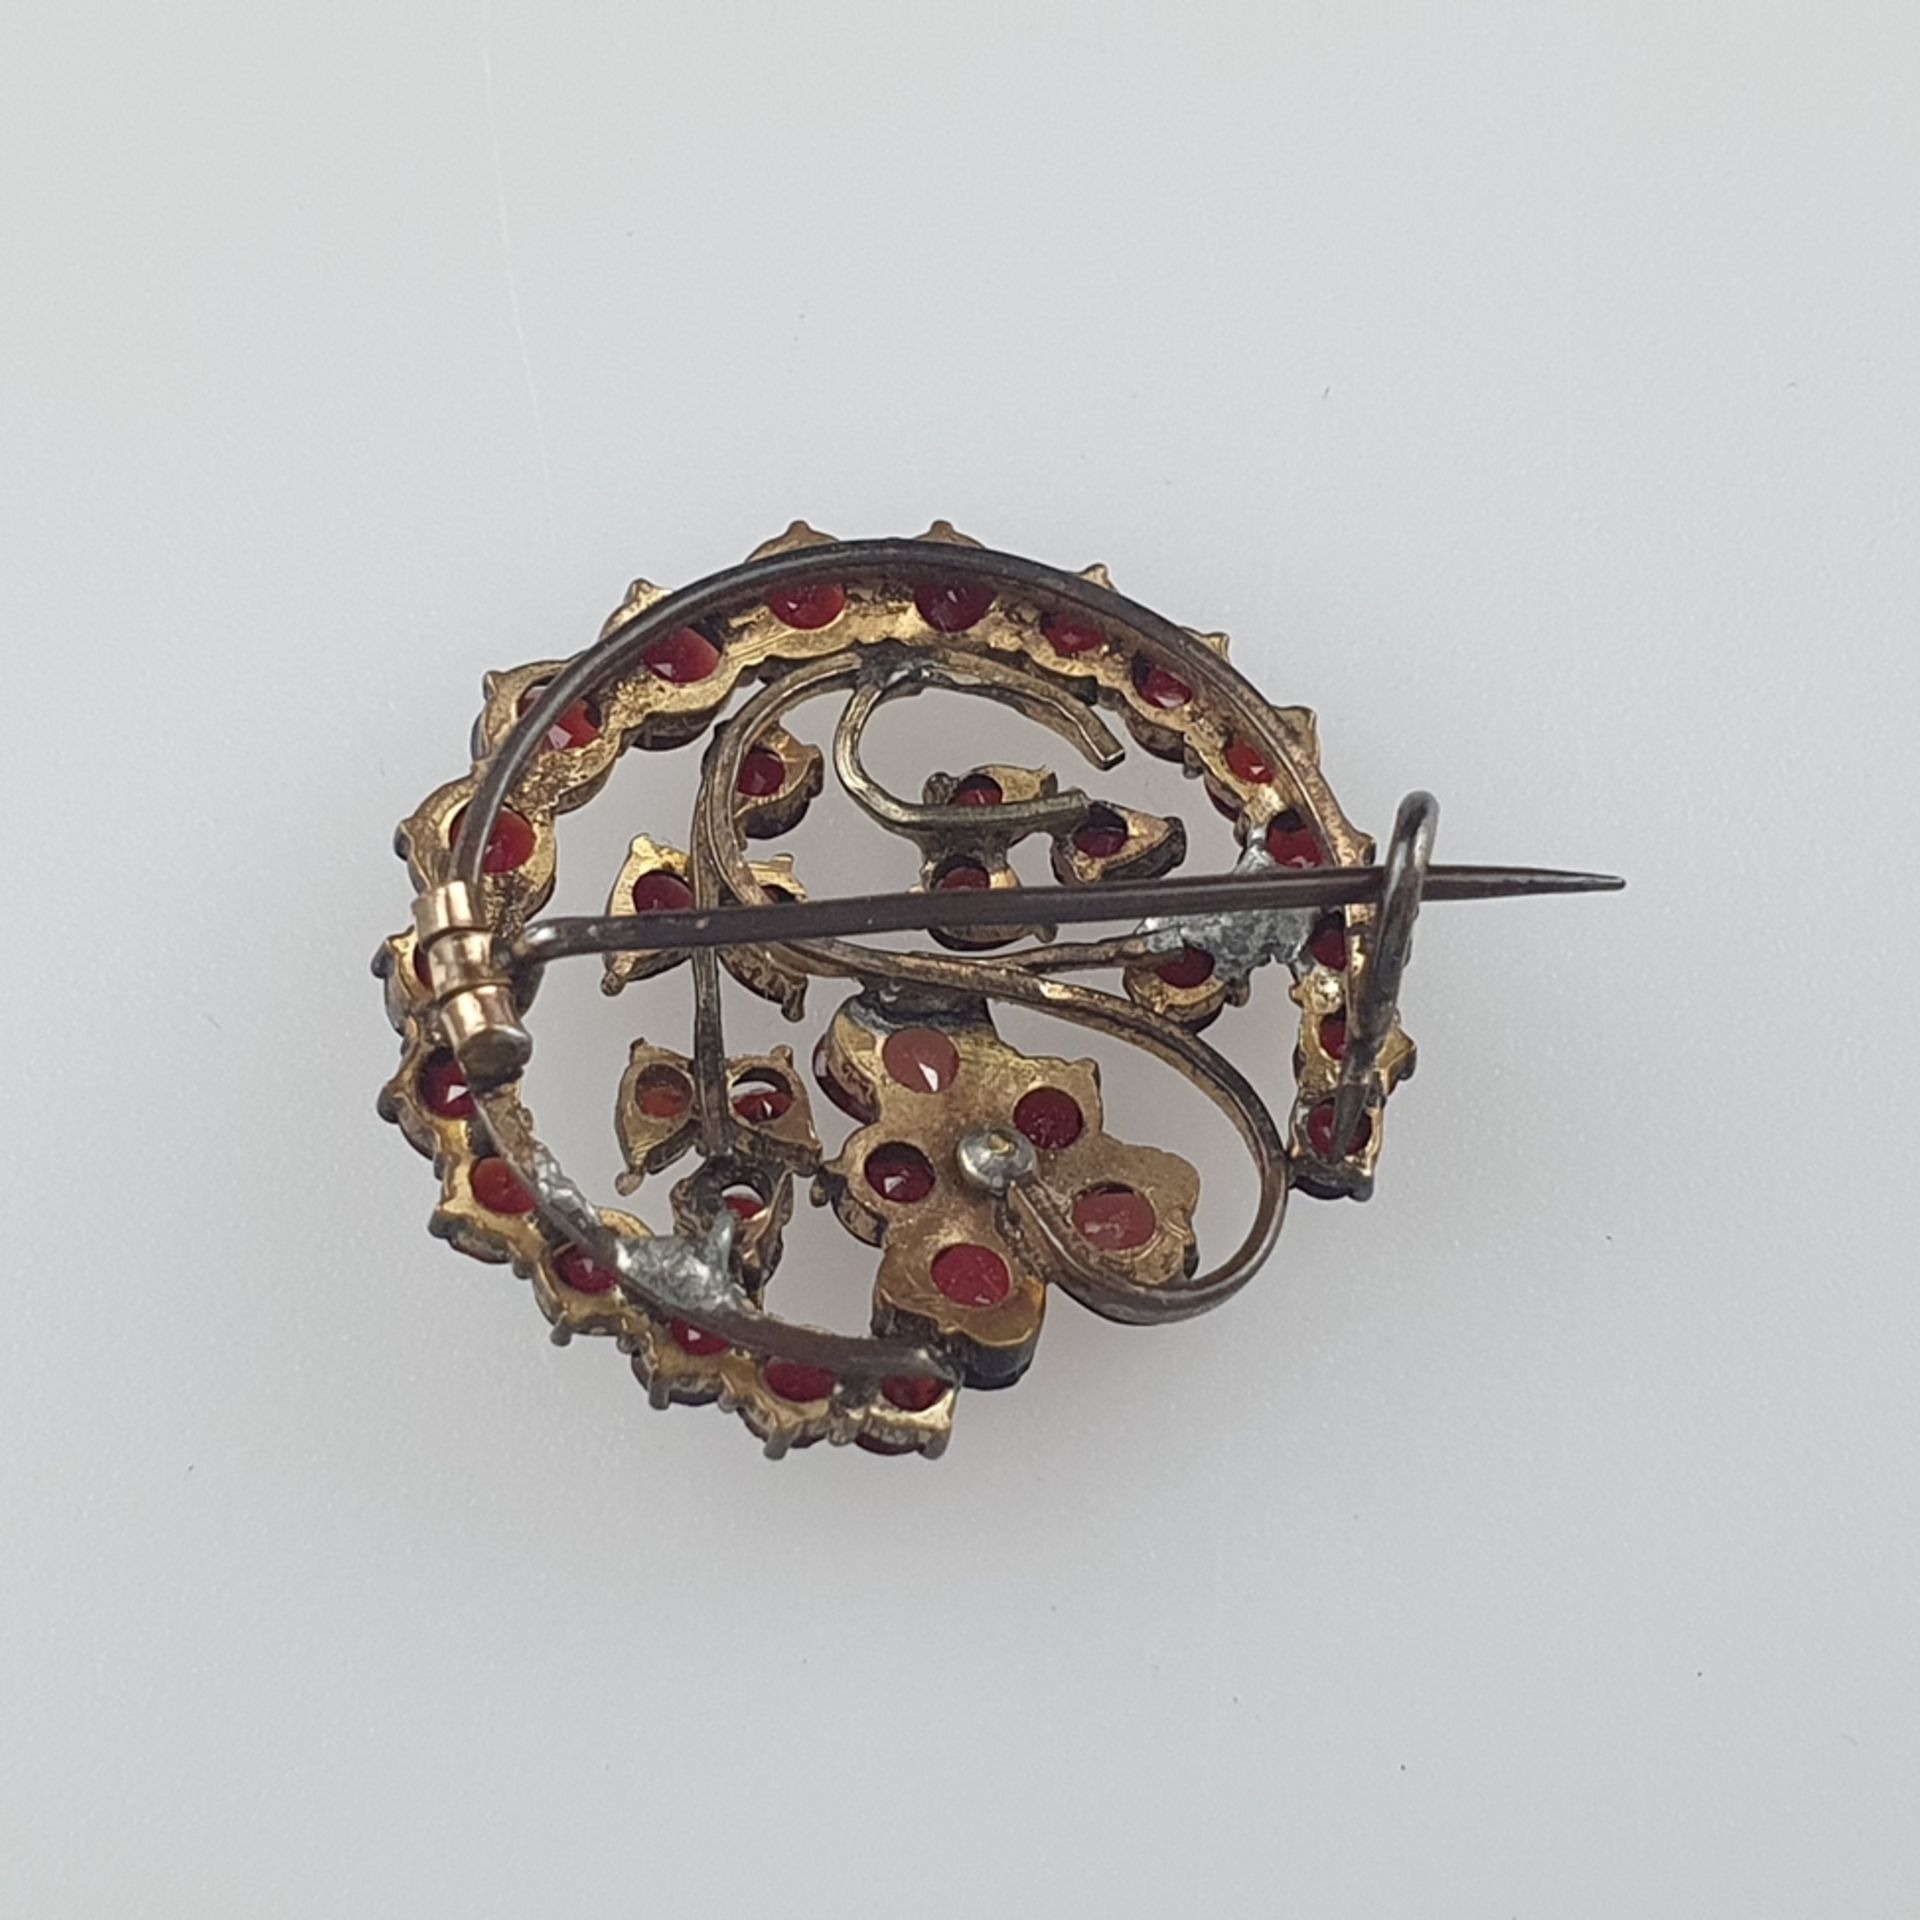 Granatbrosche - Tombak, von Kranz umgebene Blütenform, besetzt mit facettierten Granaten und einer - Image 4 of 4